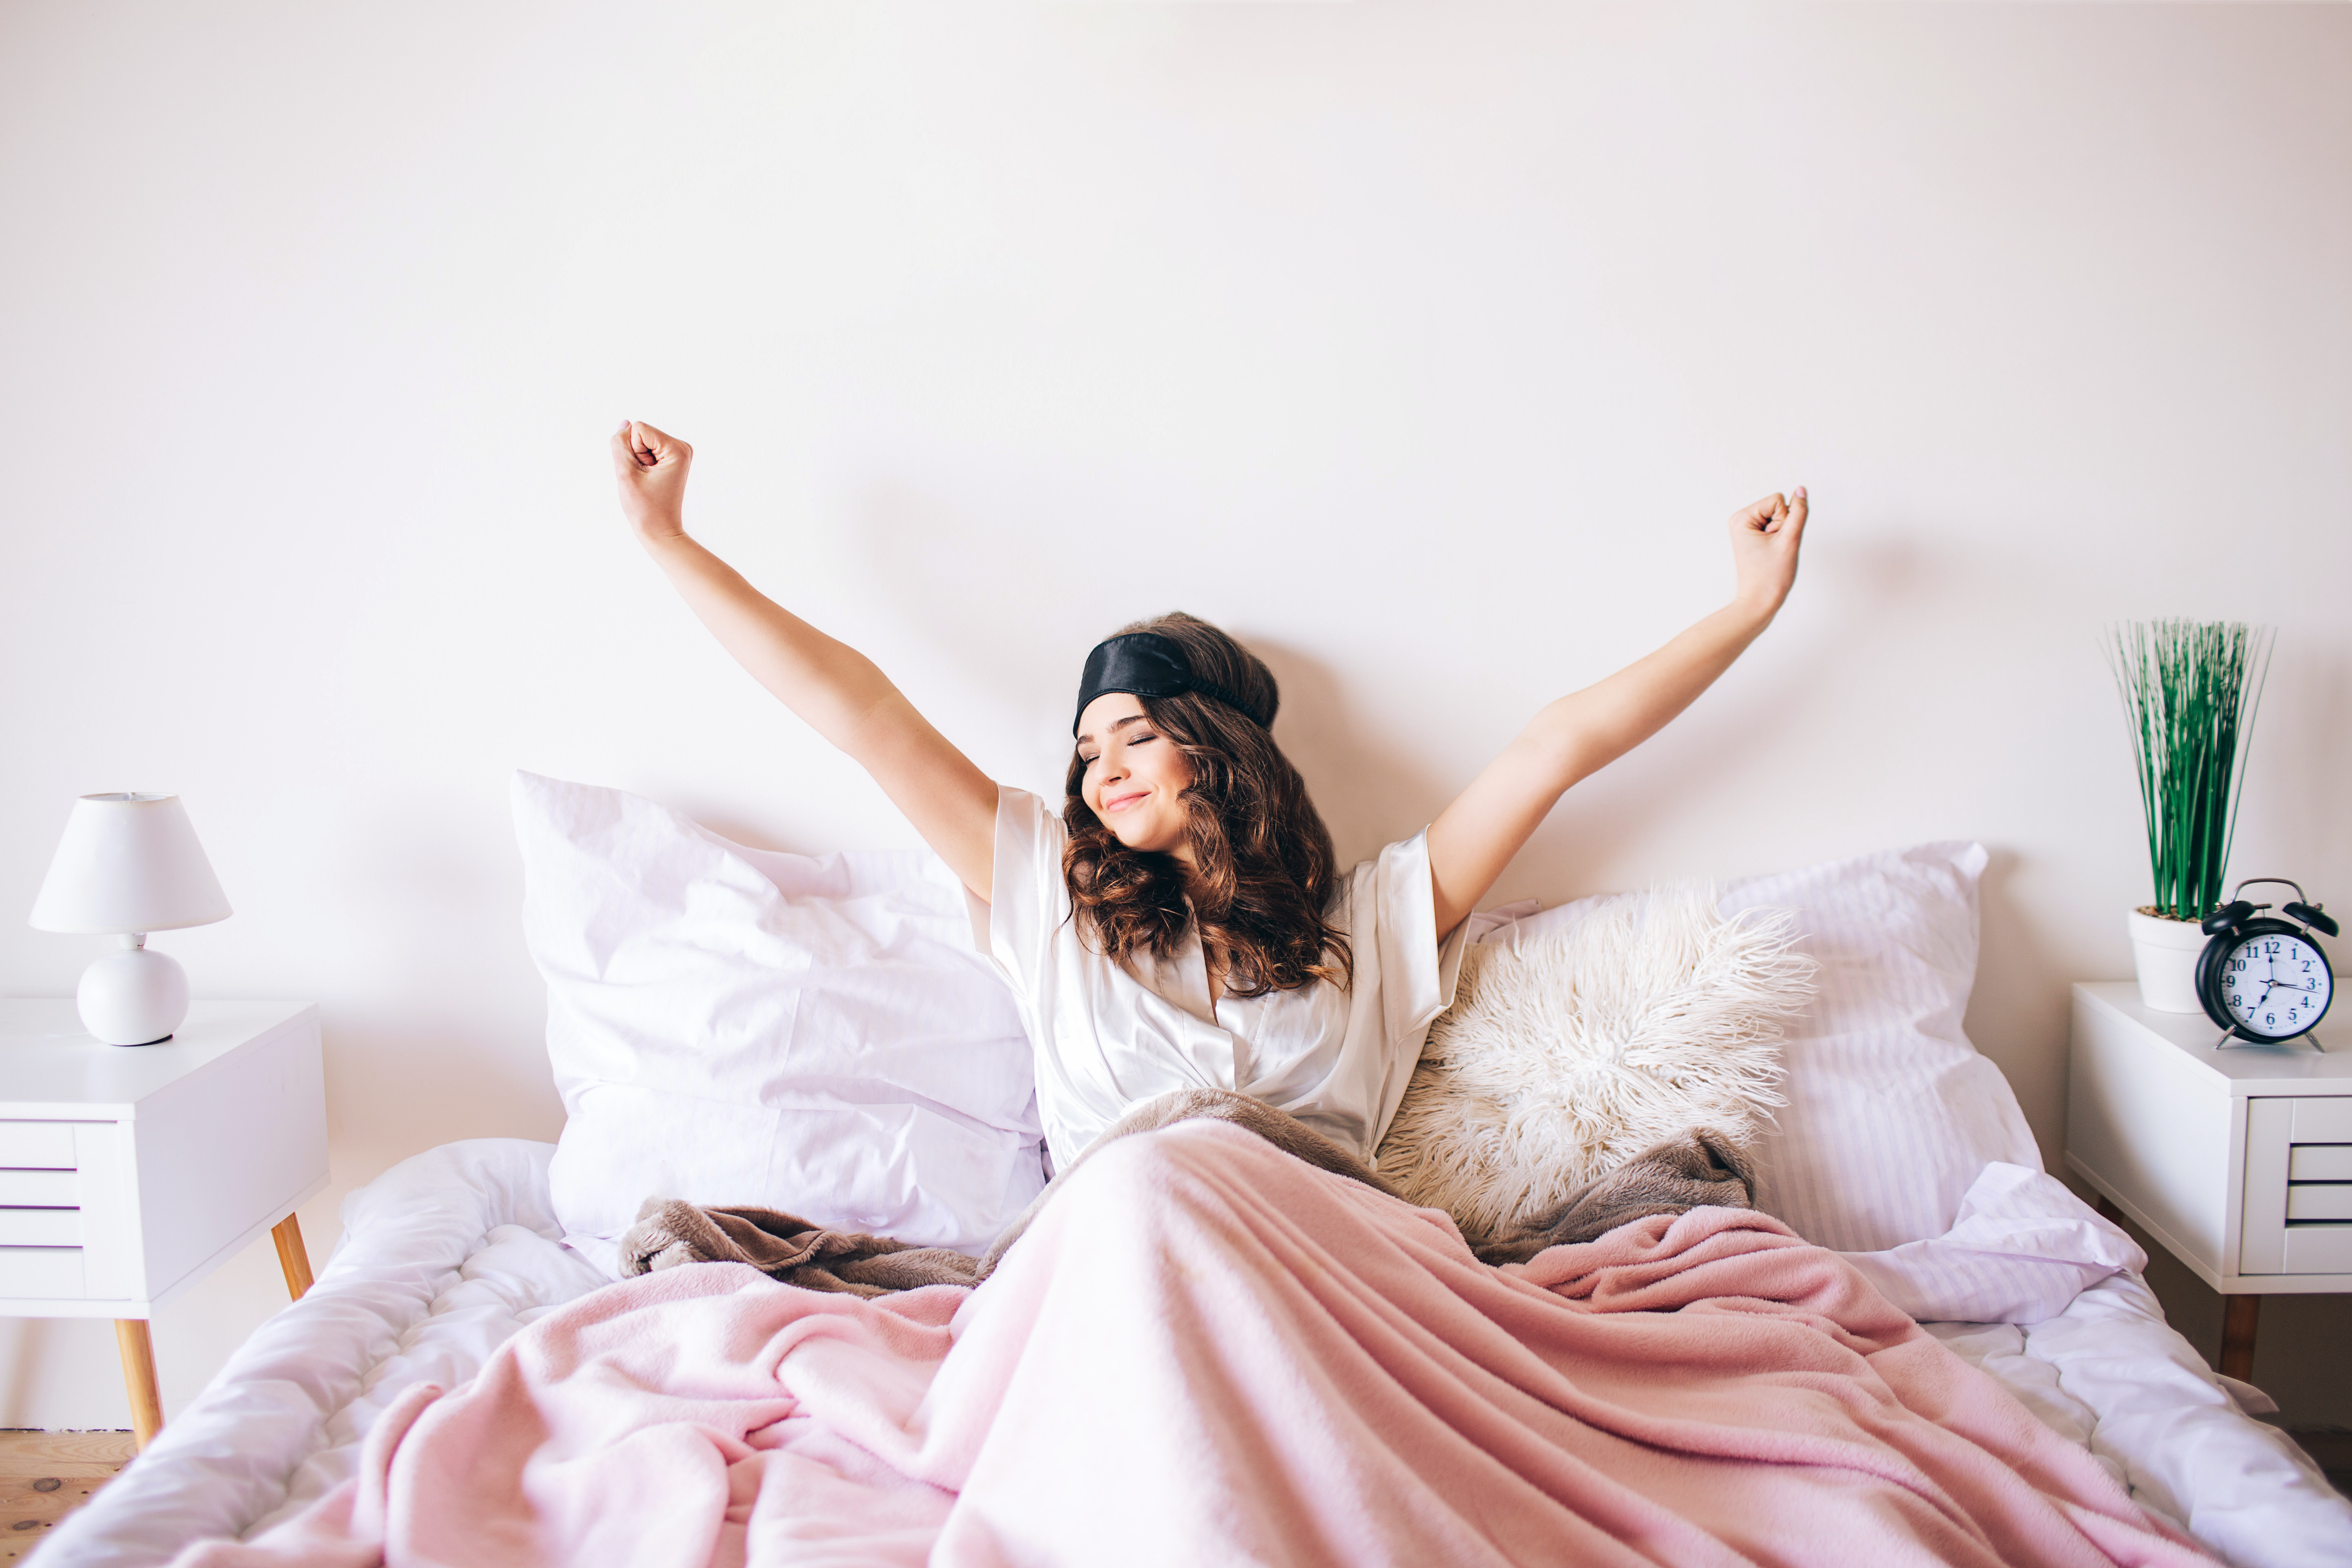 Si le sommeil a tendance à passer après d’autres facteurs de mode de vie sain, cette étude réaffirme ce facteur comme tout aussi primordial pour la santé (Visuel Adobe Stock 277014833)